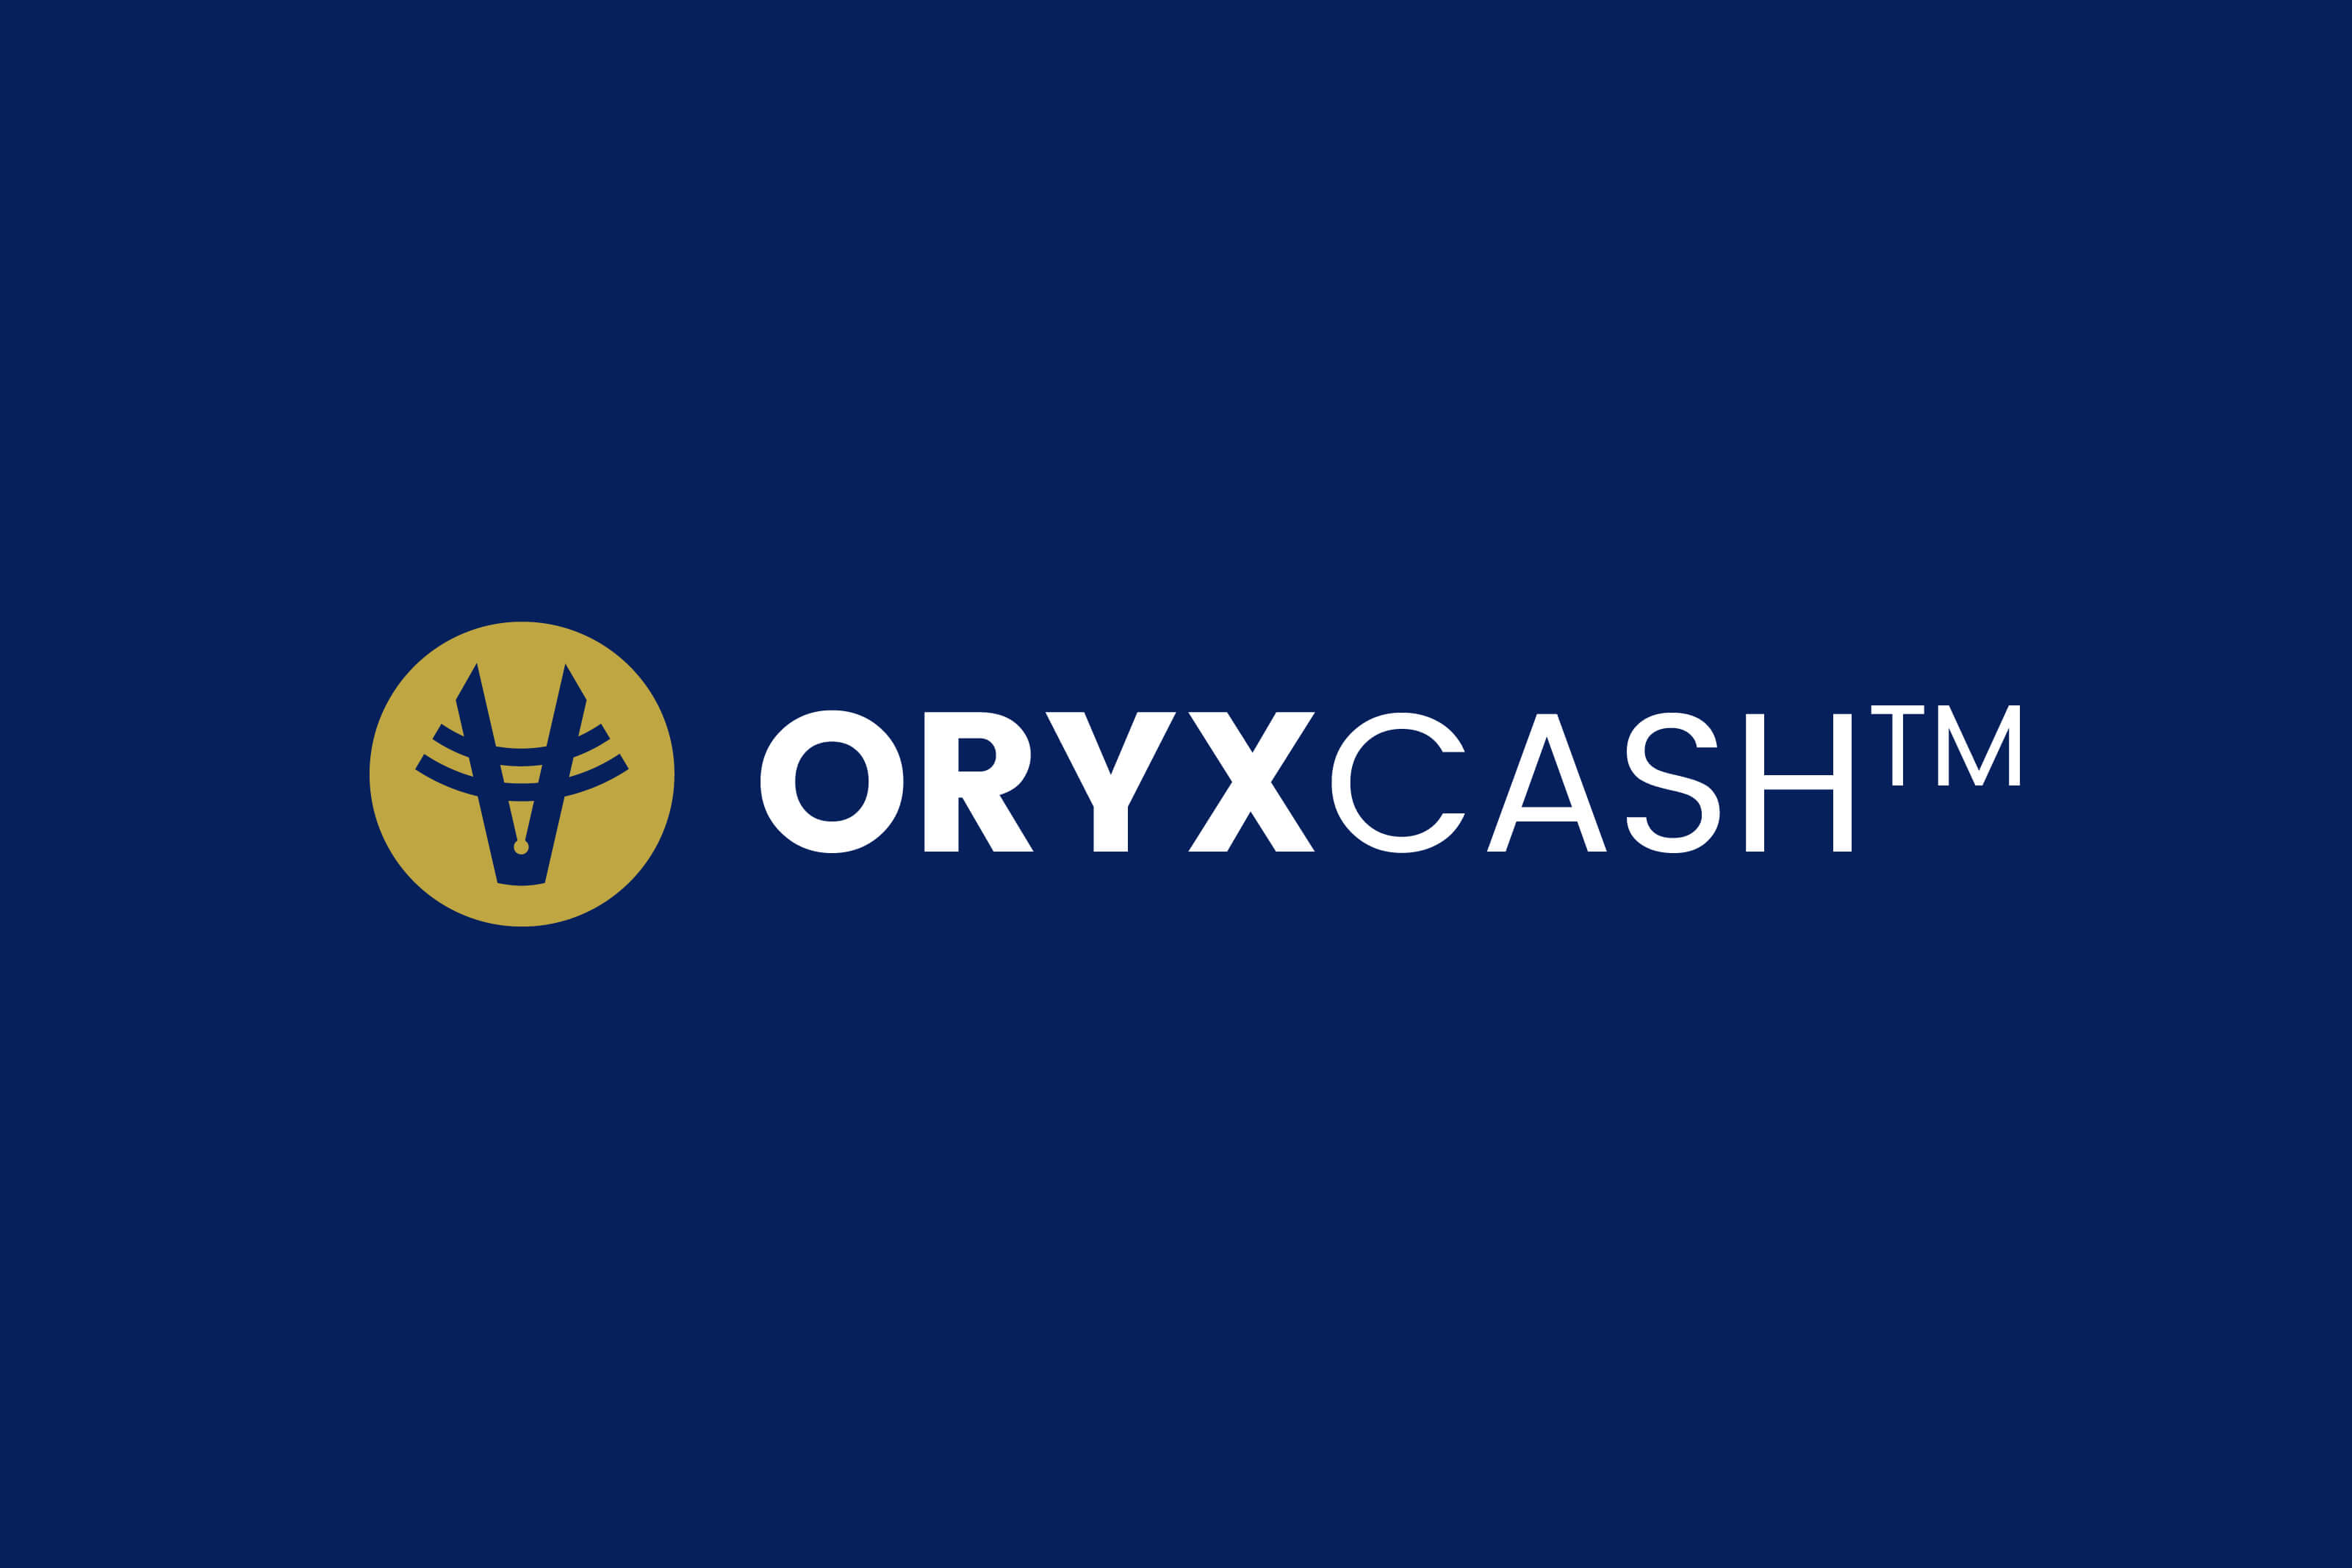 OryxCash